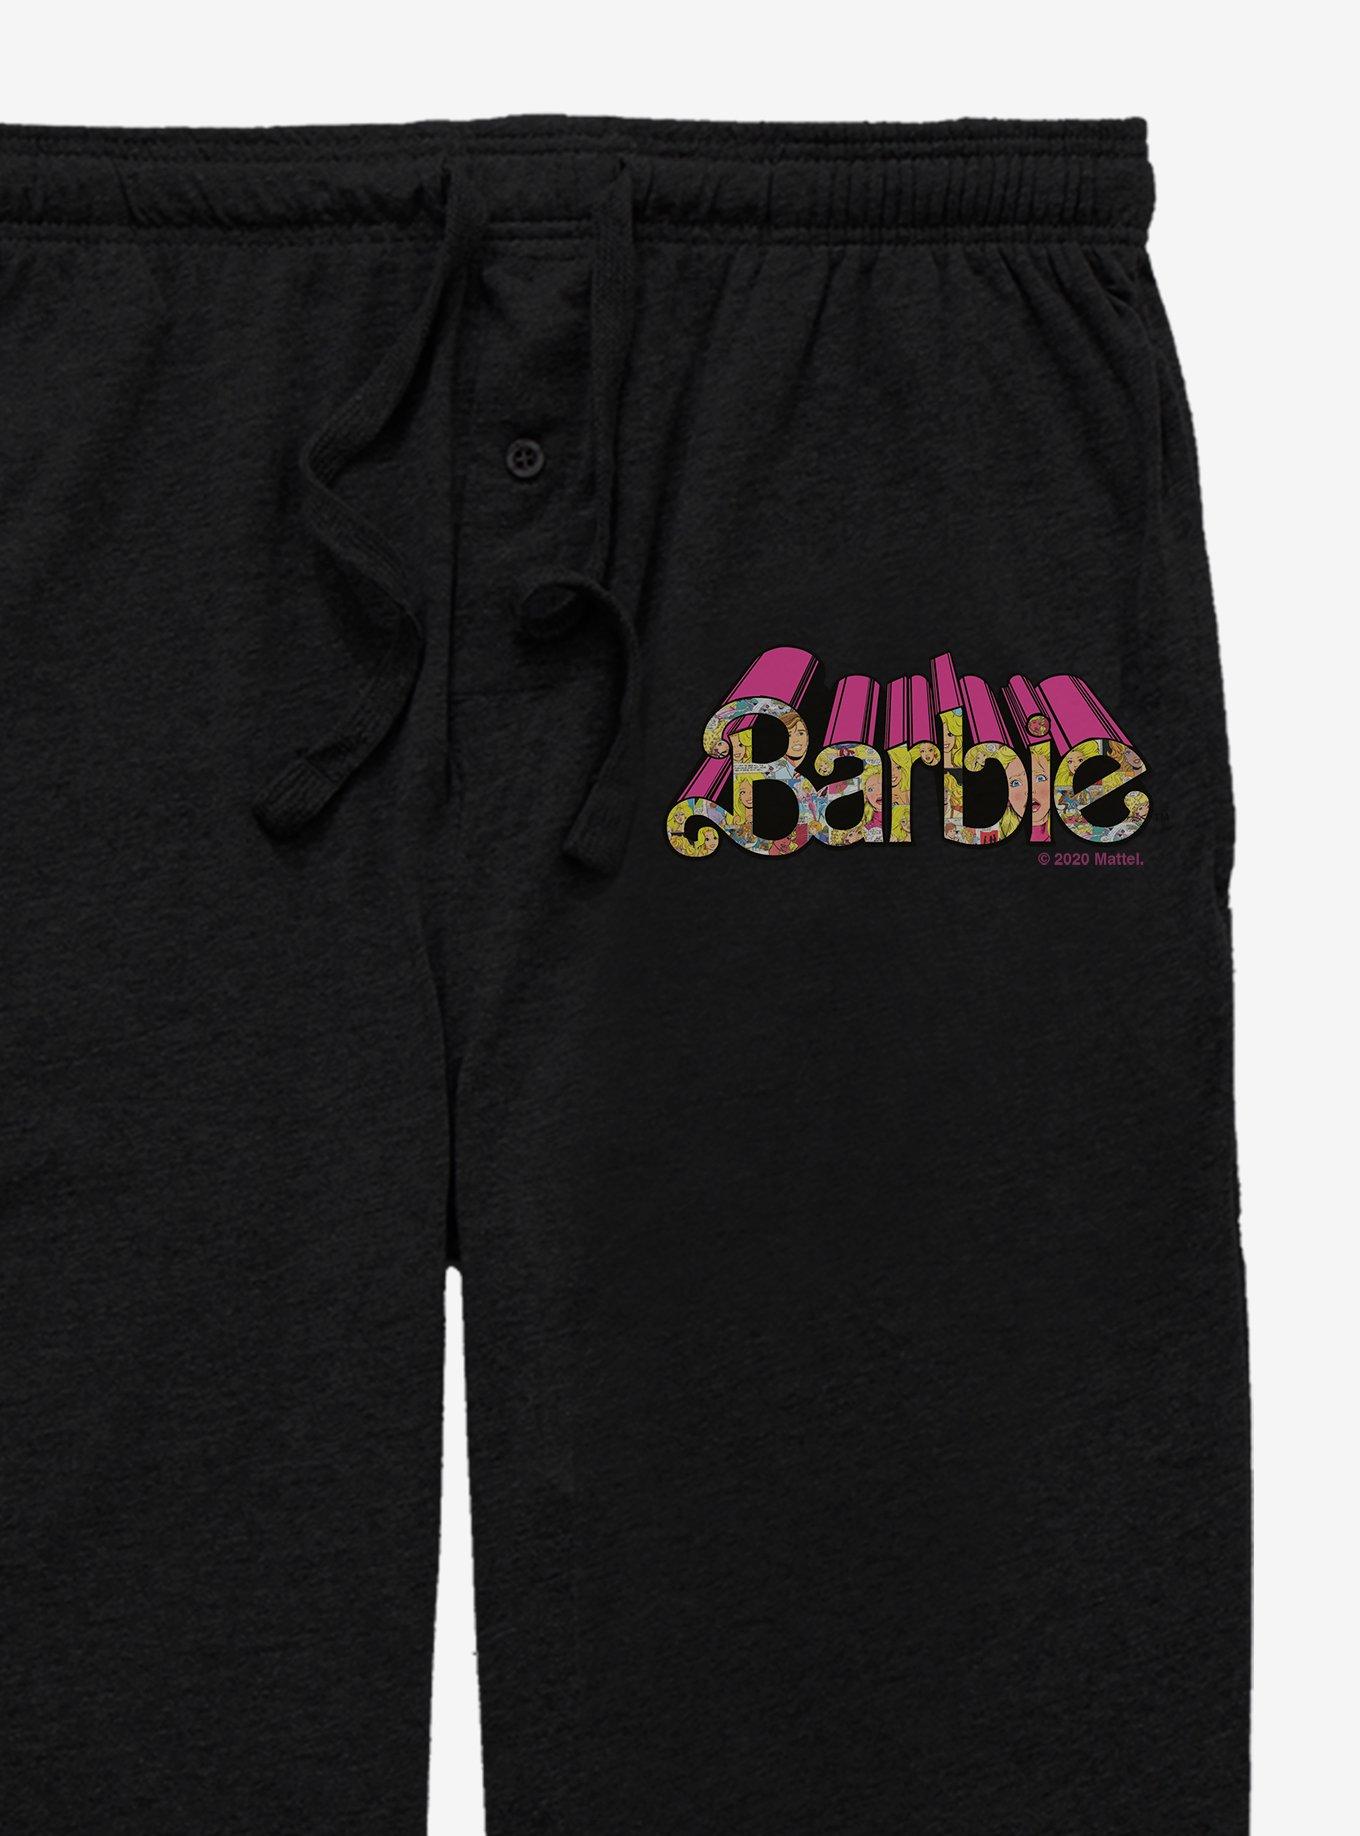 Barbie Groovy Pajama Pants, BLACK, alternate